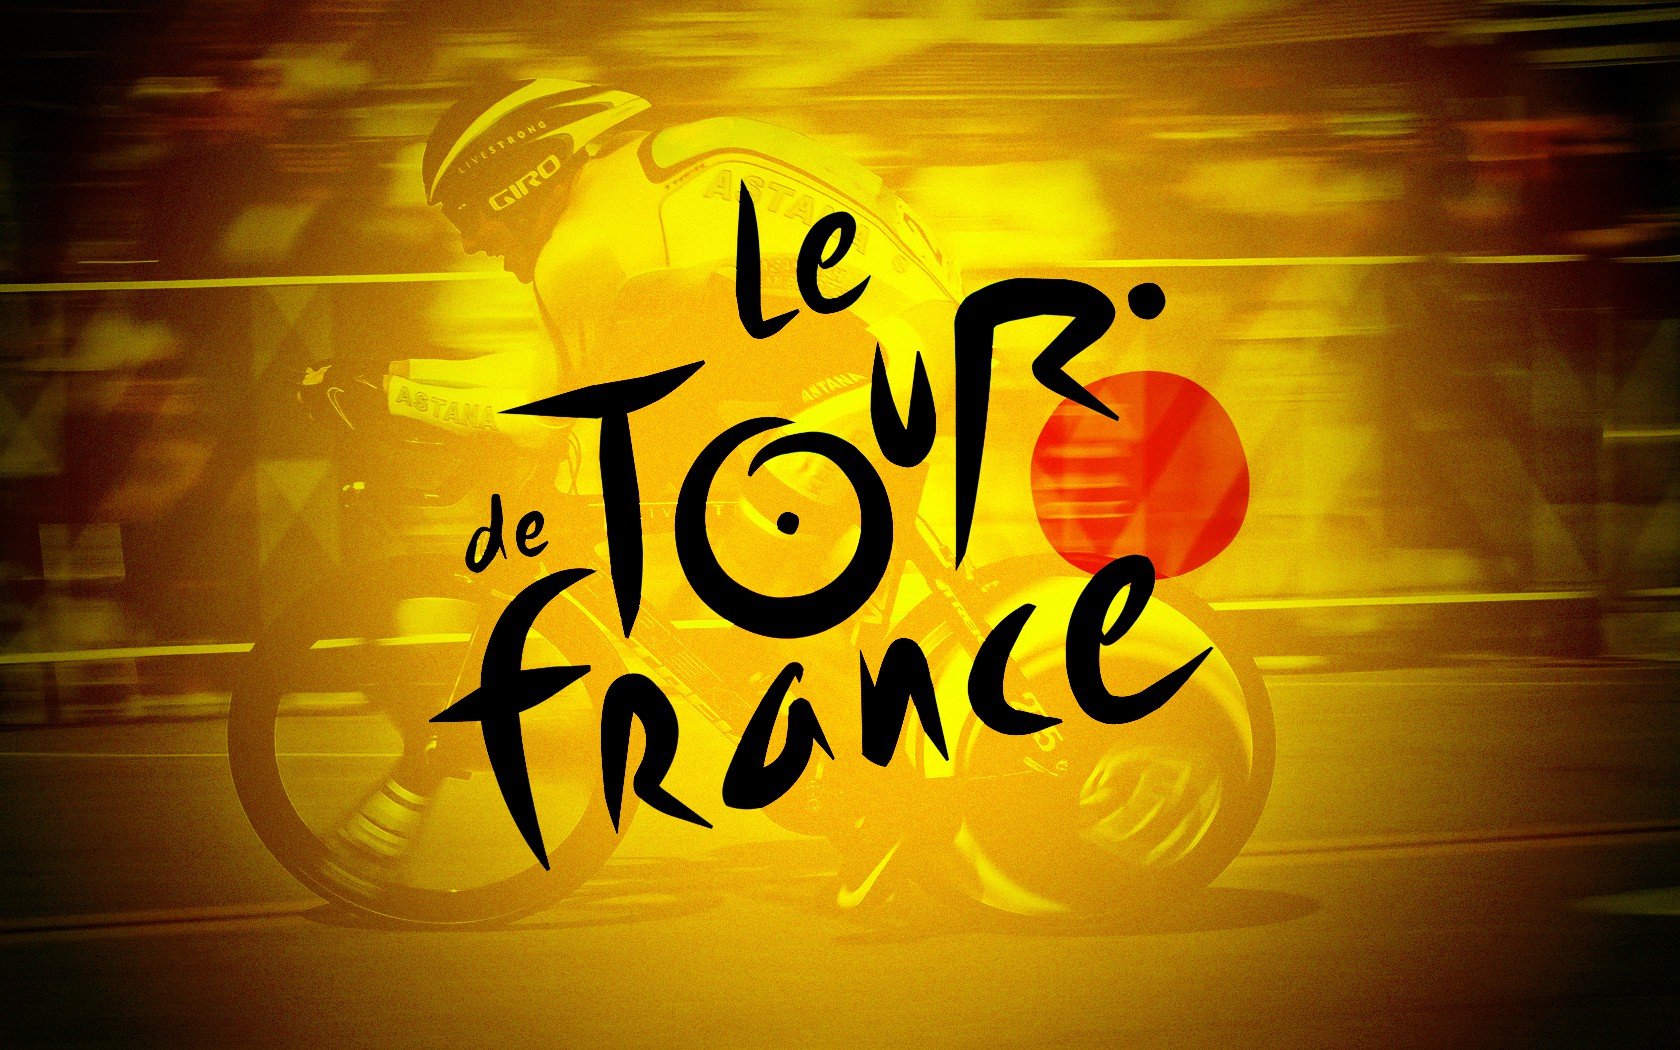 logo del tour de francia 2022